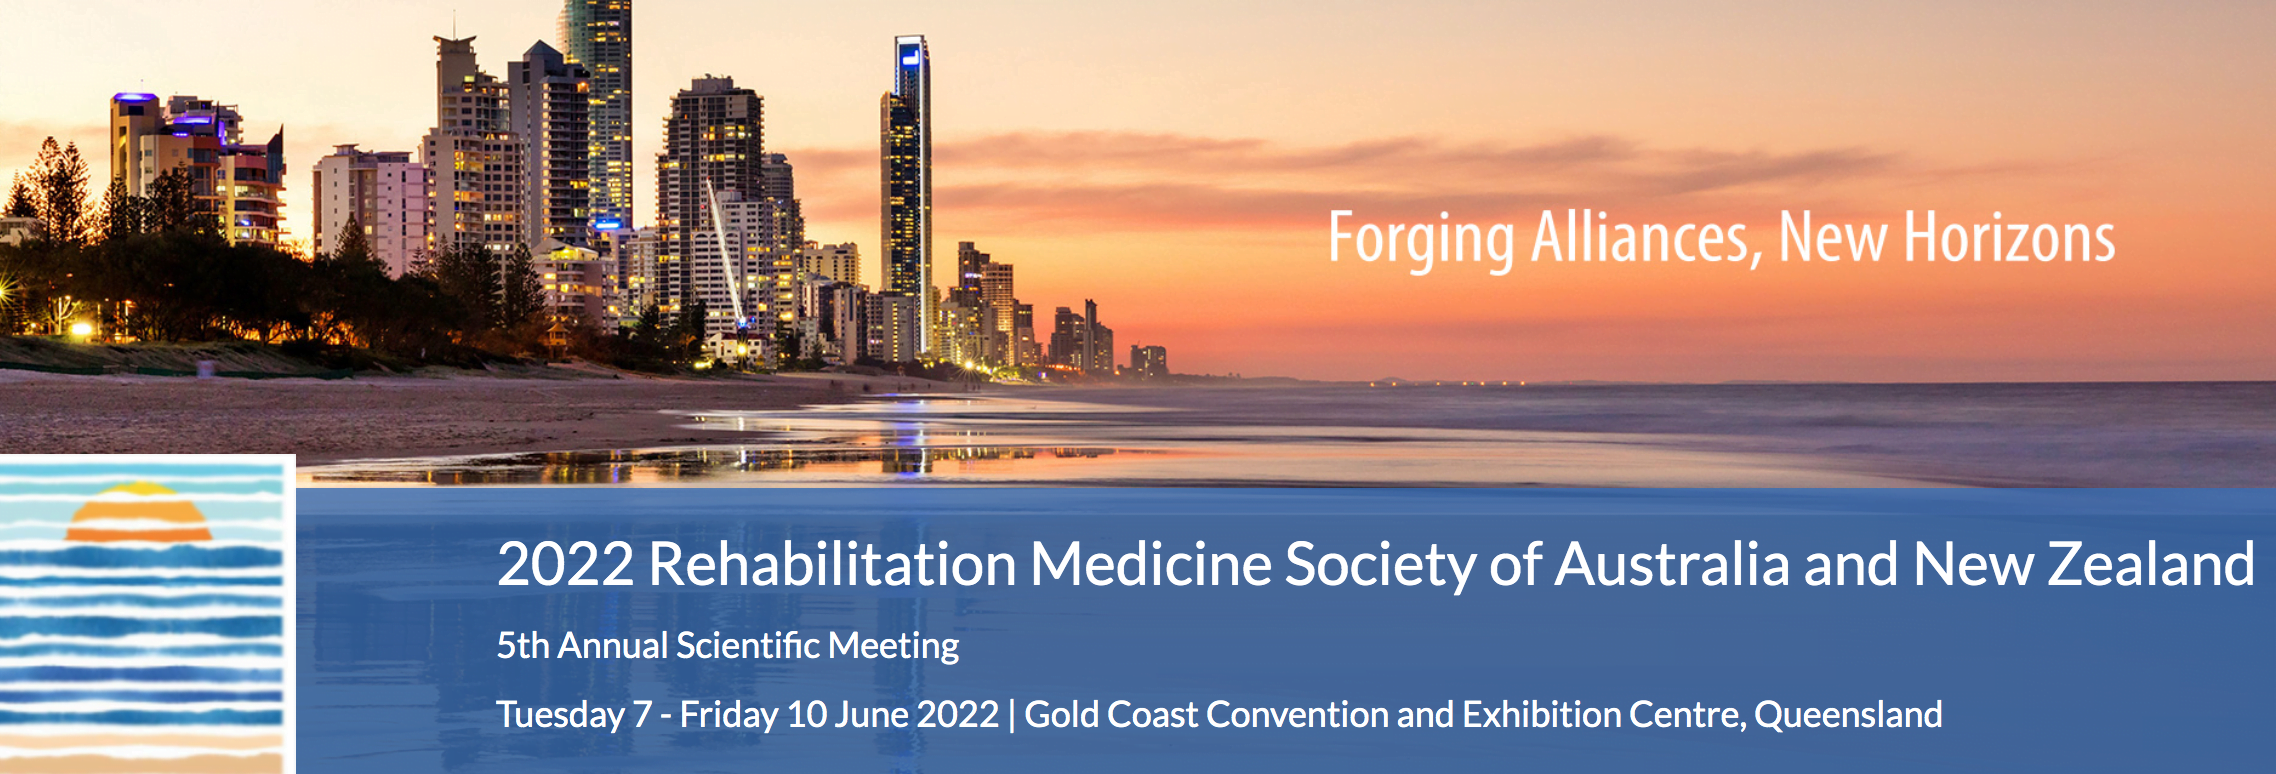 2022 Rehabilitation Medicine Society of Australia and New Zealand